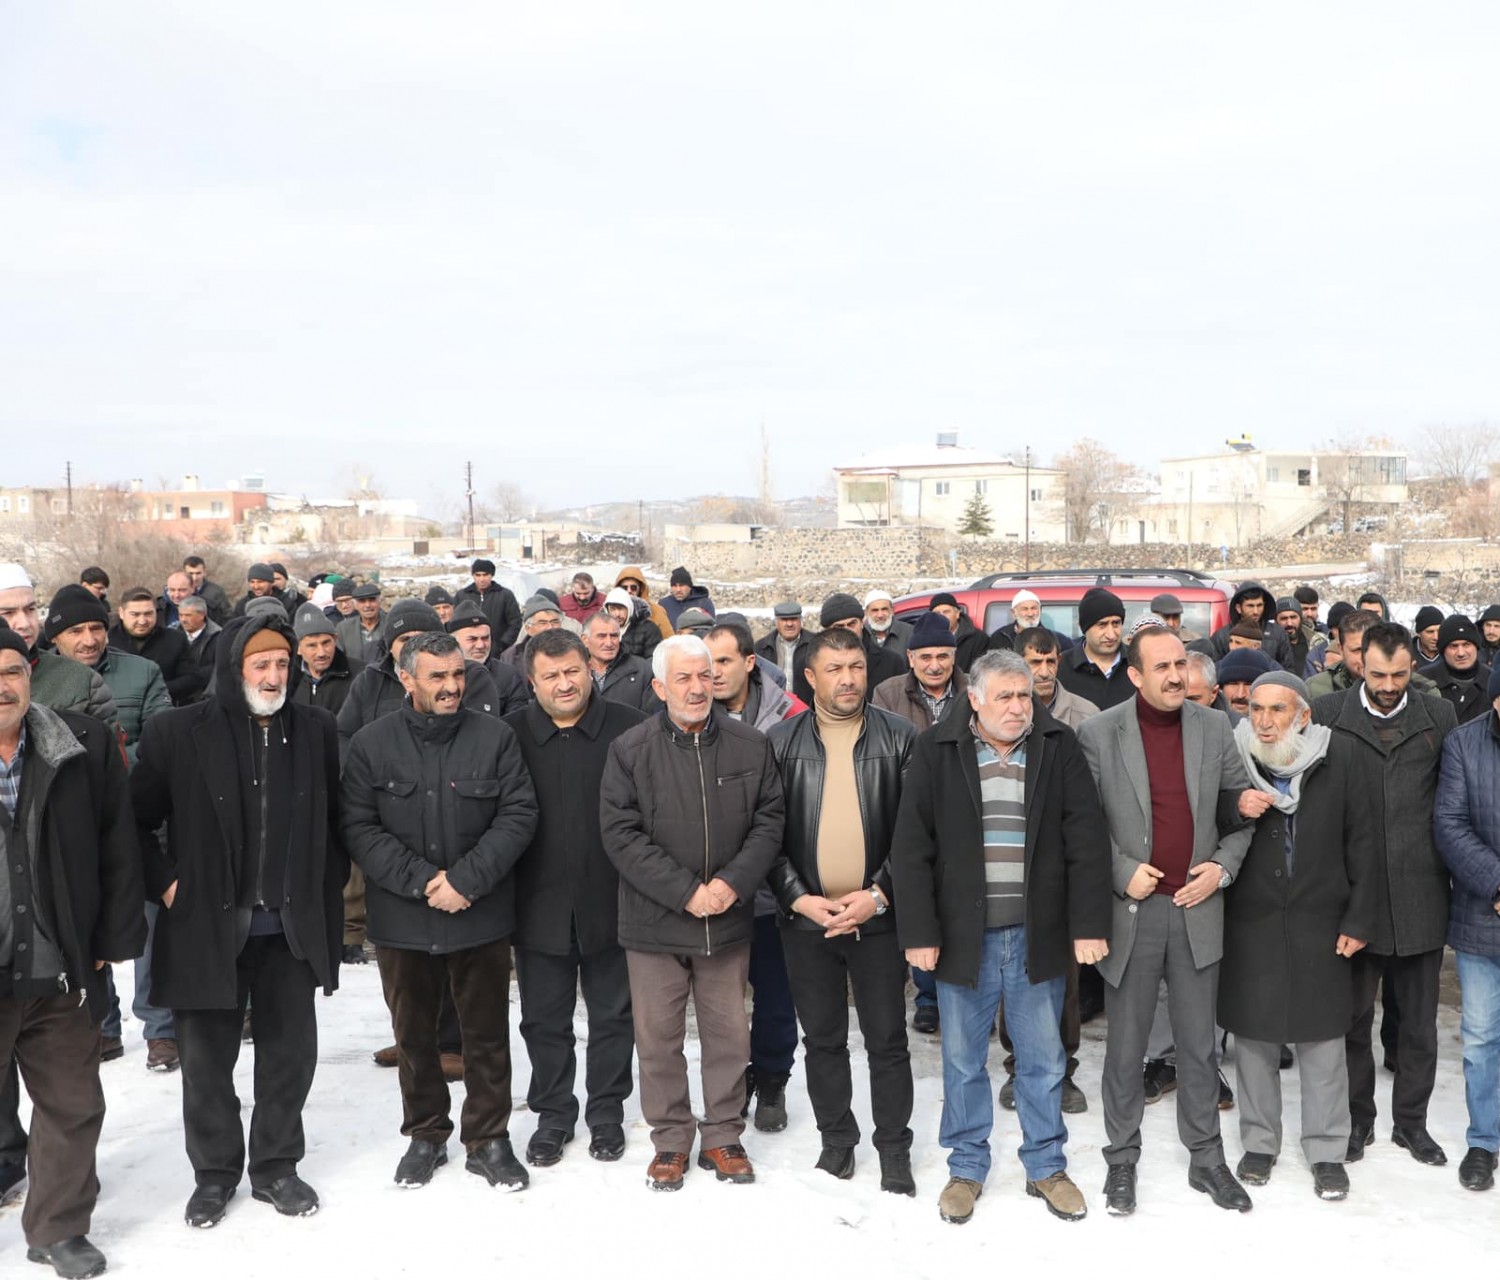 Belediye Başkanımız Av. Mustafa İlmek, AK Parti İlçe Başkan Yardımcısı Sn. Hüseyin Yazer ve ilçe teşkilatı ile birlikte Kocaoğlan Çardak mahallesinde düzenlenen